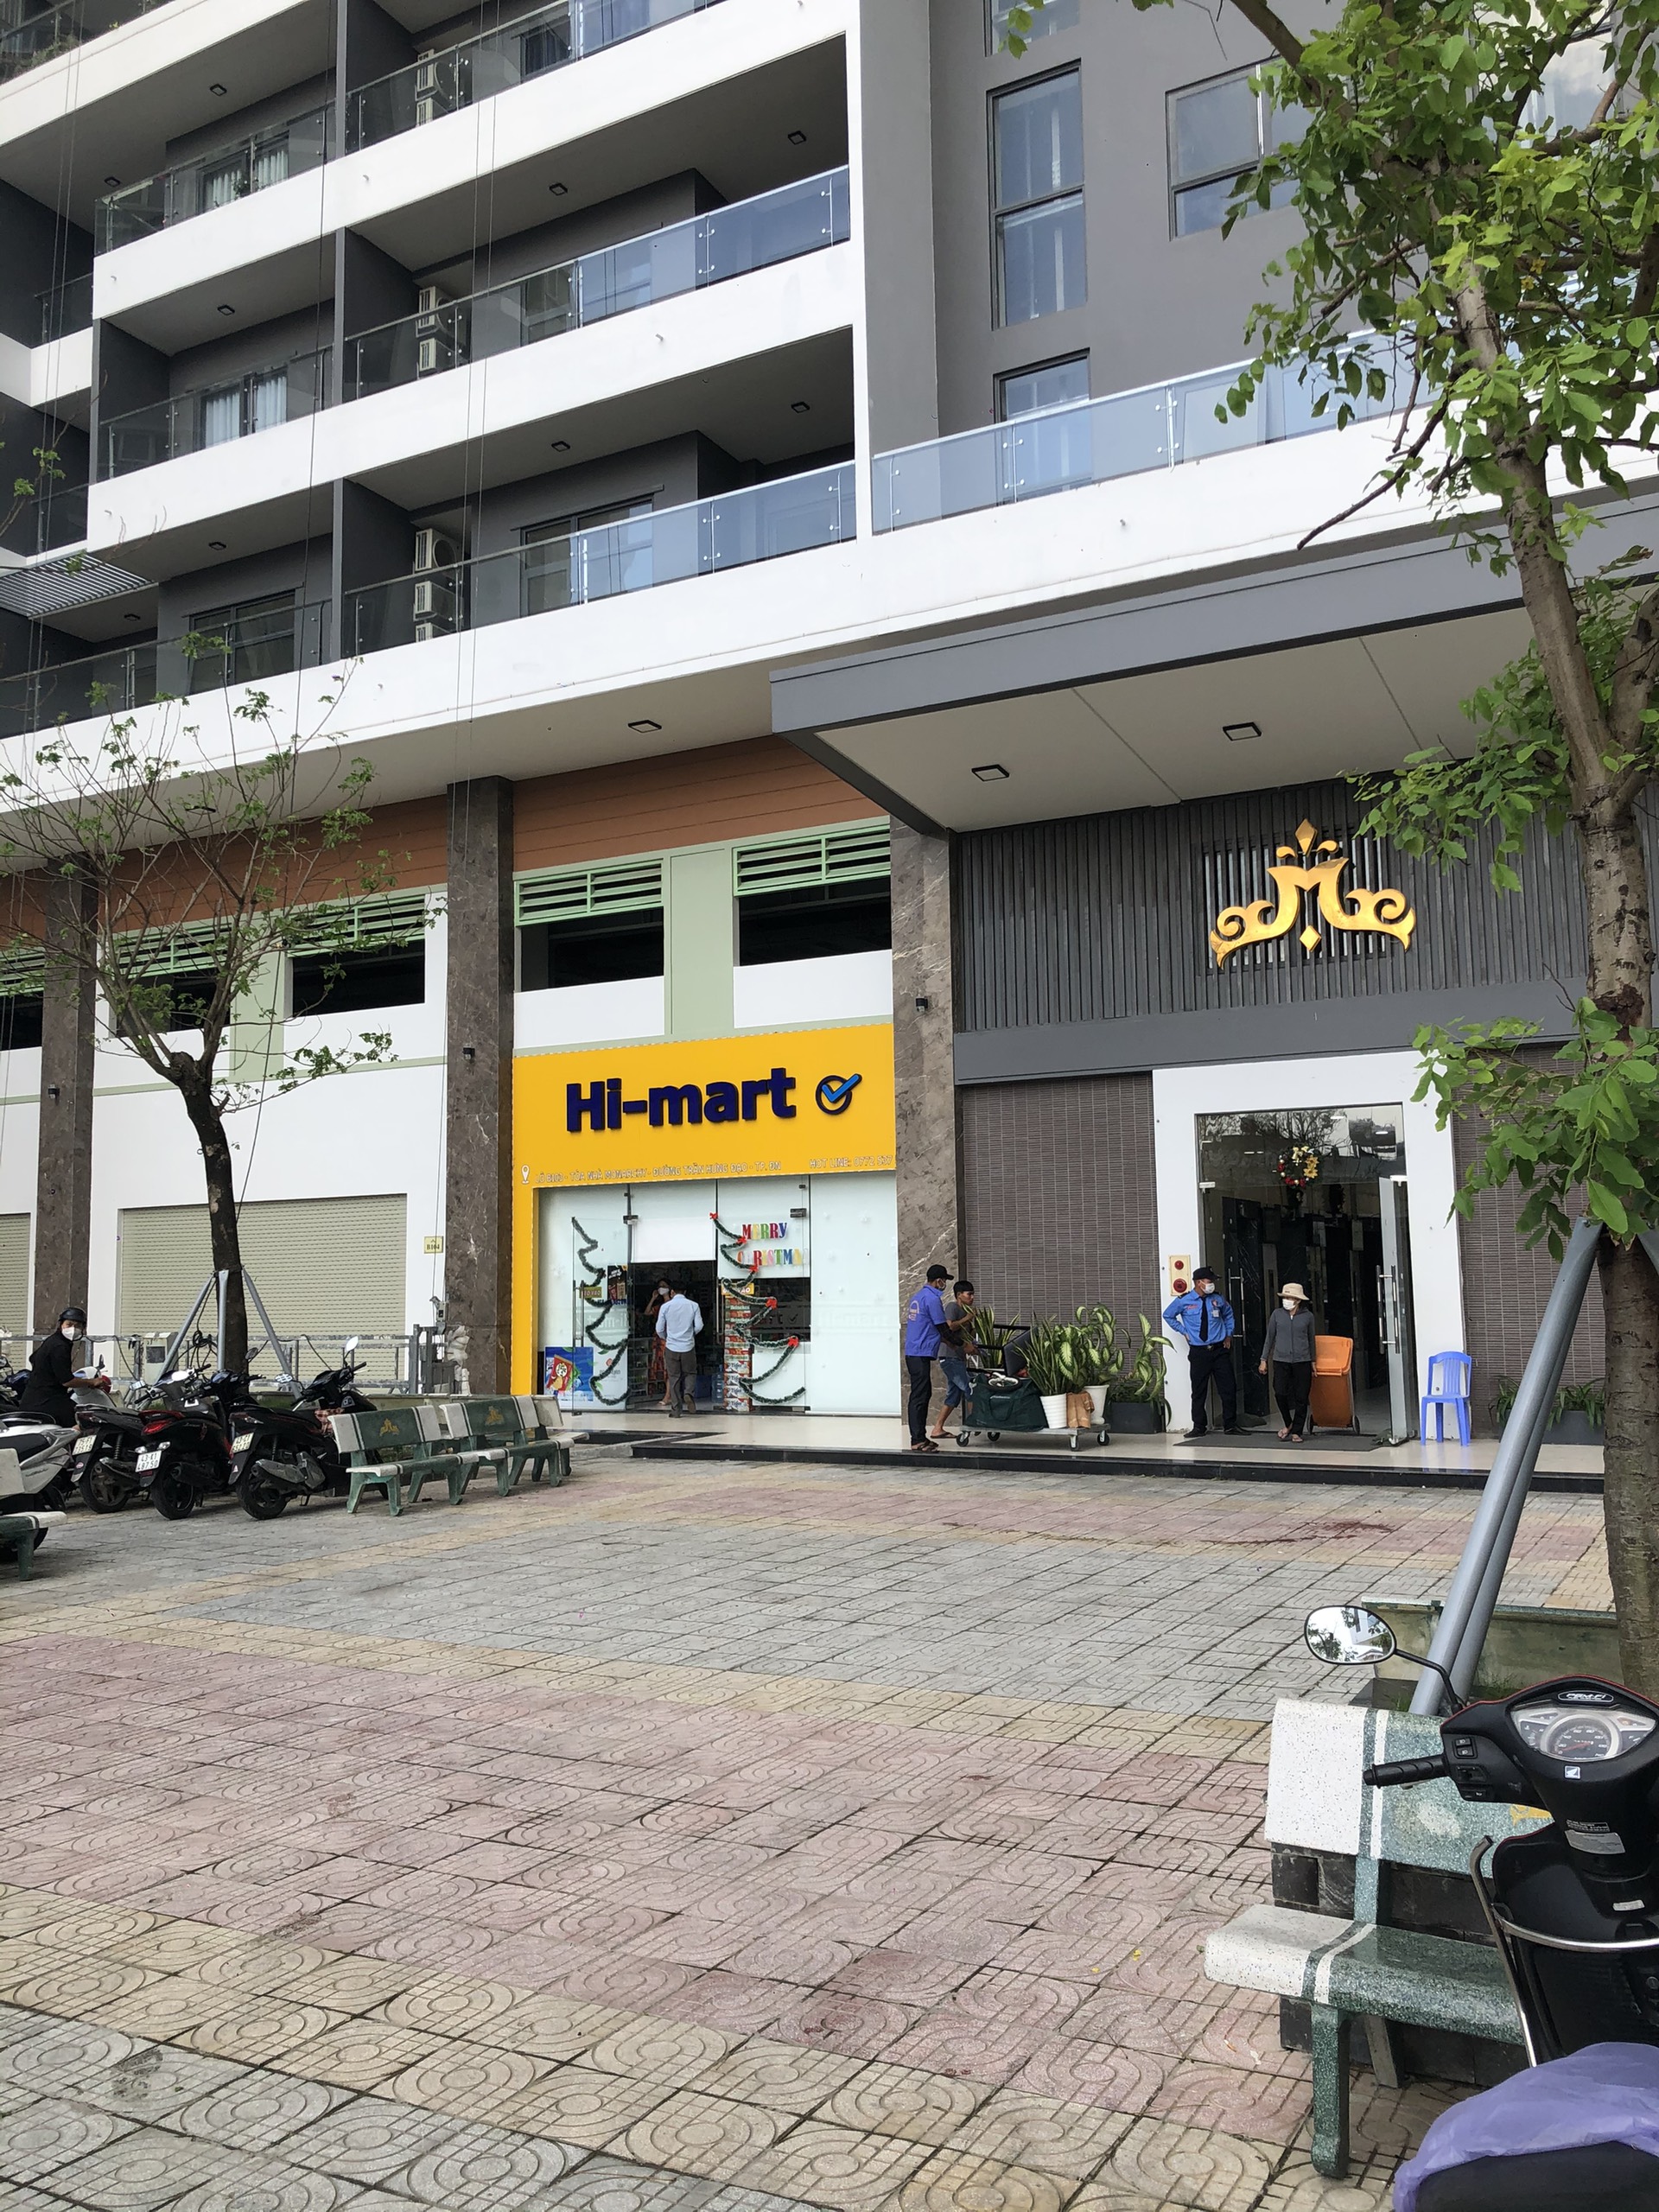 Thiết kế nội thất Chung Cư tại Đà Nẵng Siêu thị MiniMart - Hi Mart Chung cư Mornachy Đà Nẵng 1632798690 4